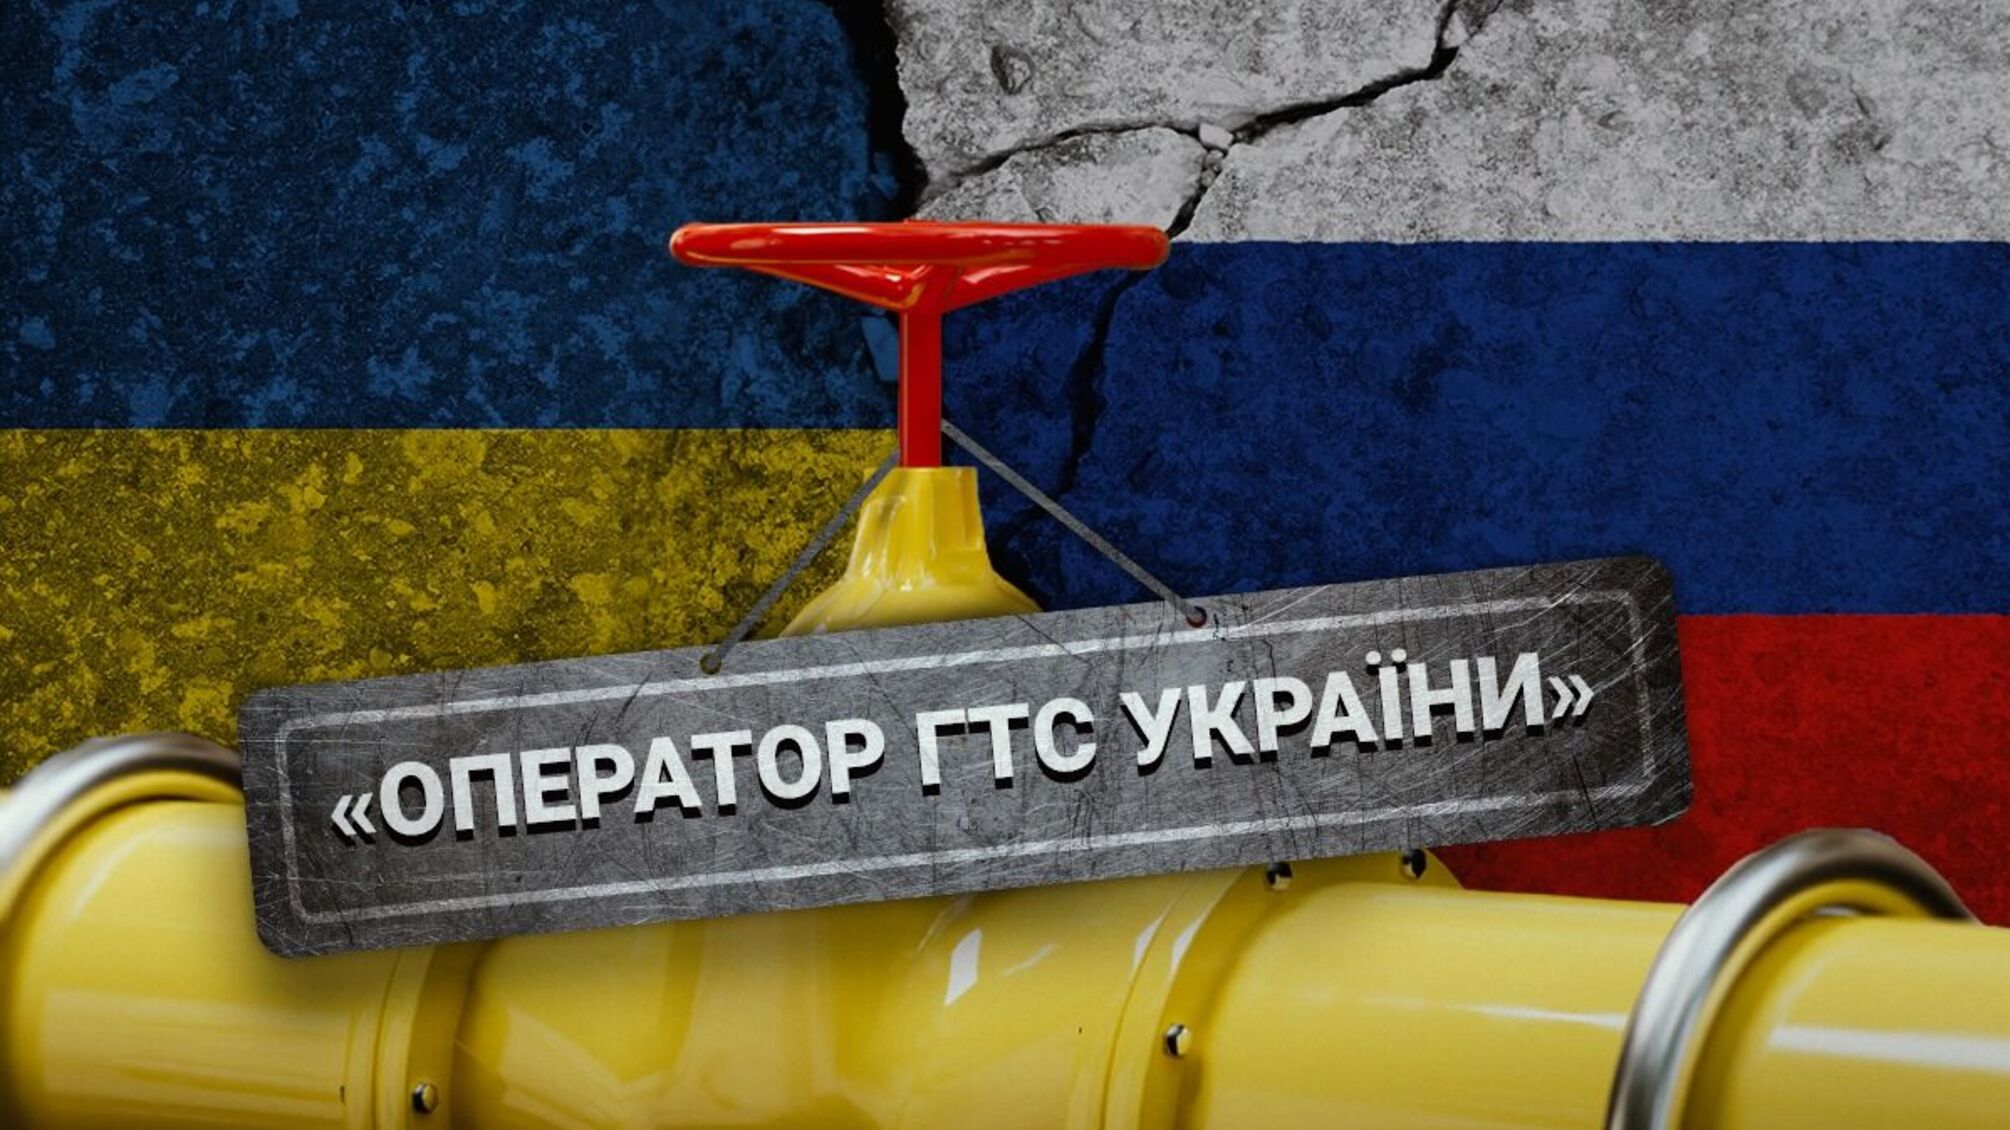 Оператор ГТС України провів тендер з 'підгонкою' для закупівлі російських труб?